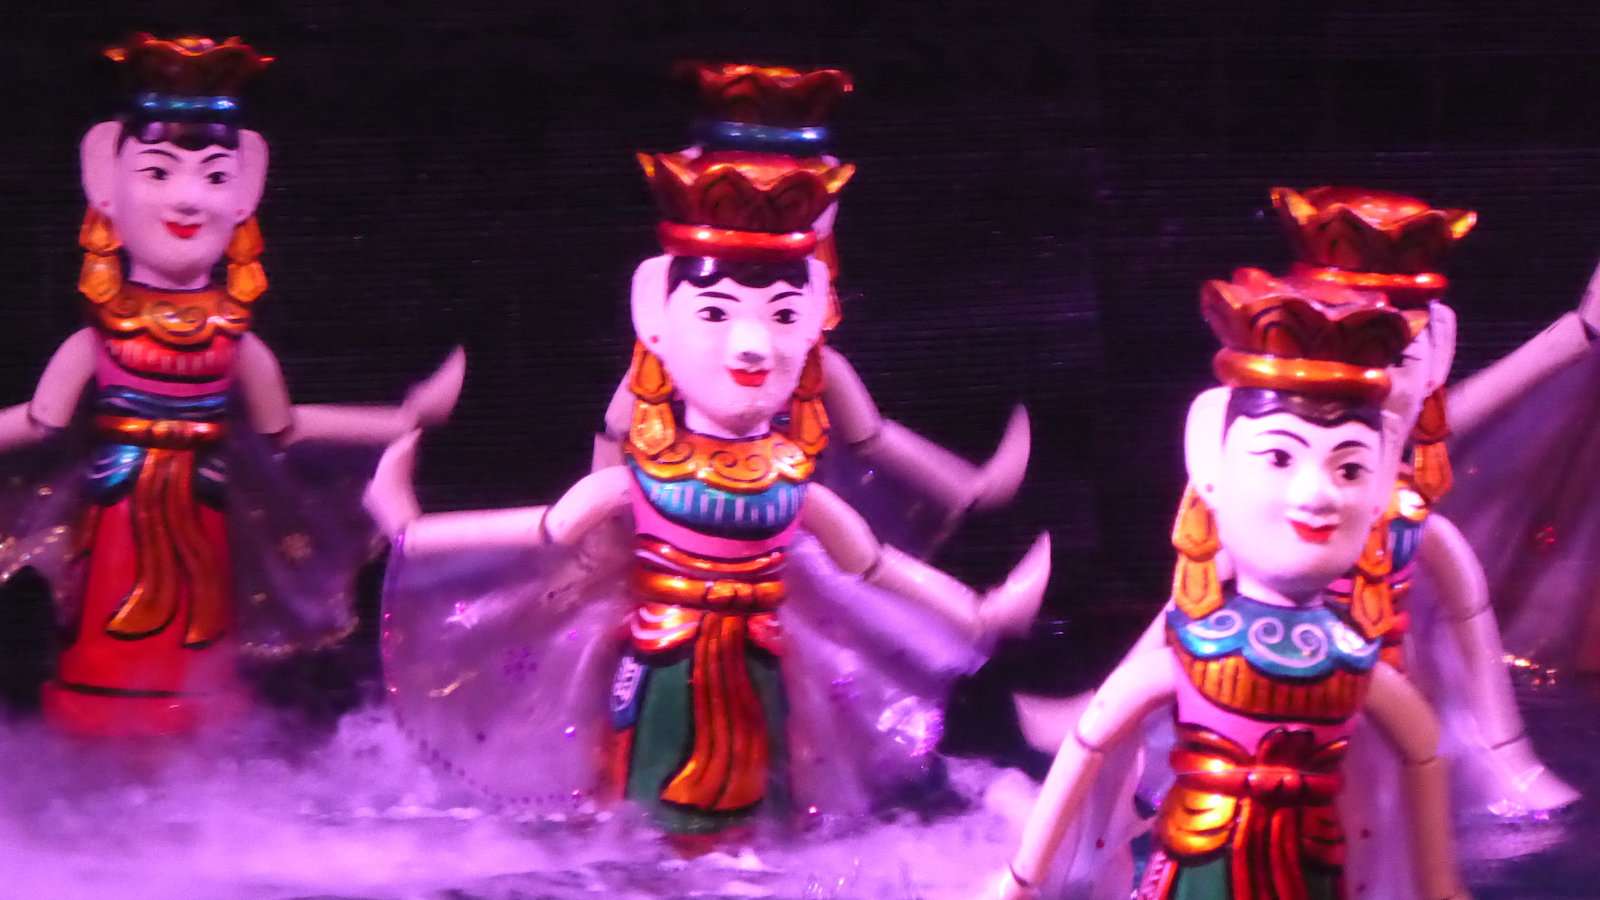 Os fantoches de água são uma tradição consagrada do Vietname, que recomendamos que veja por si mesmo